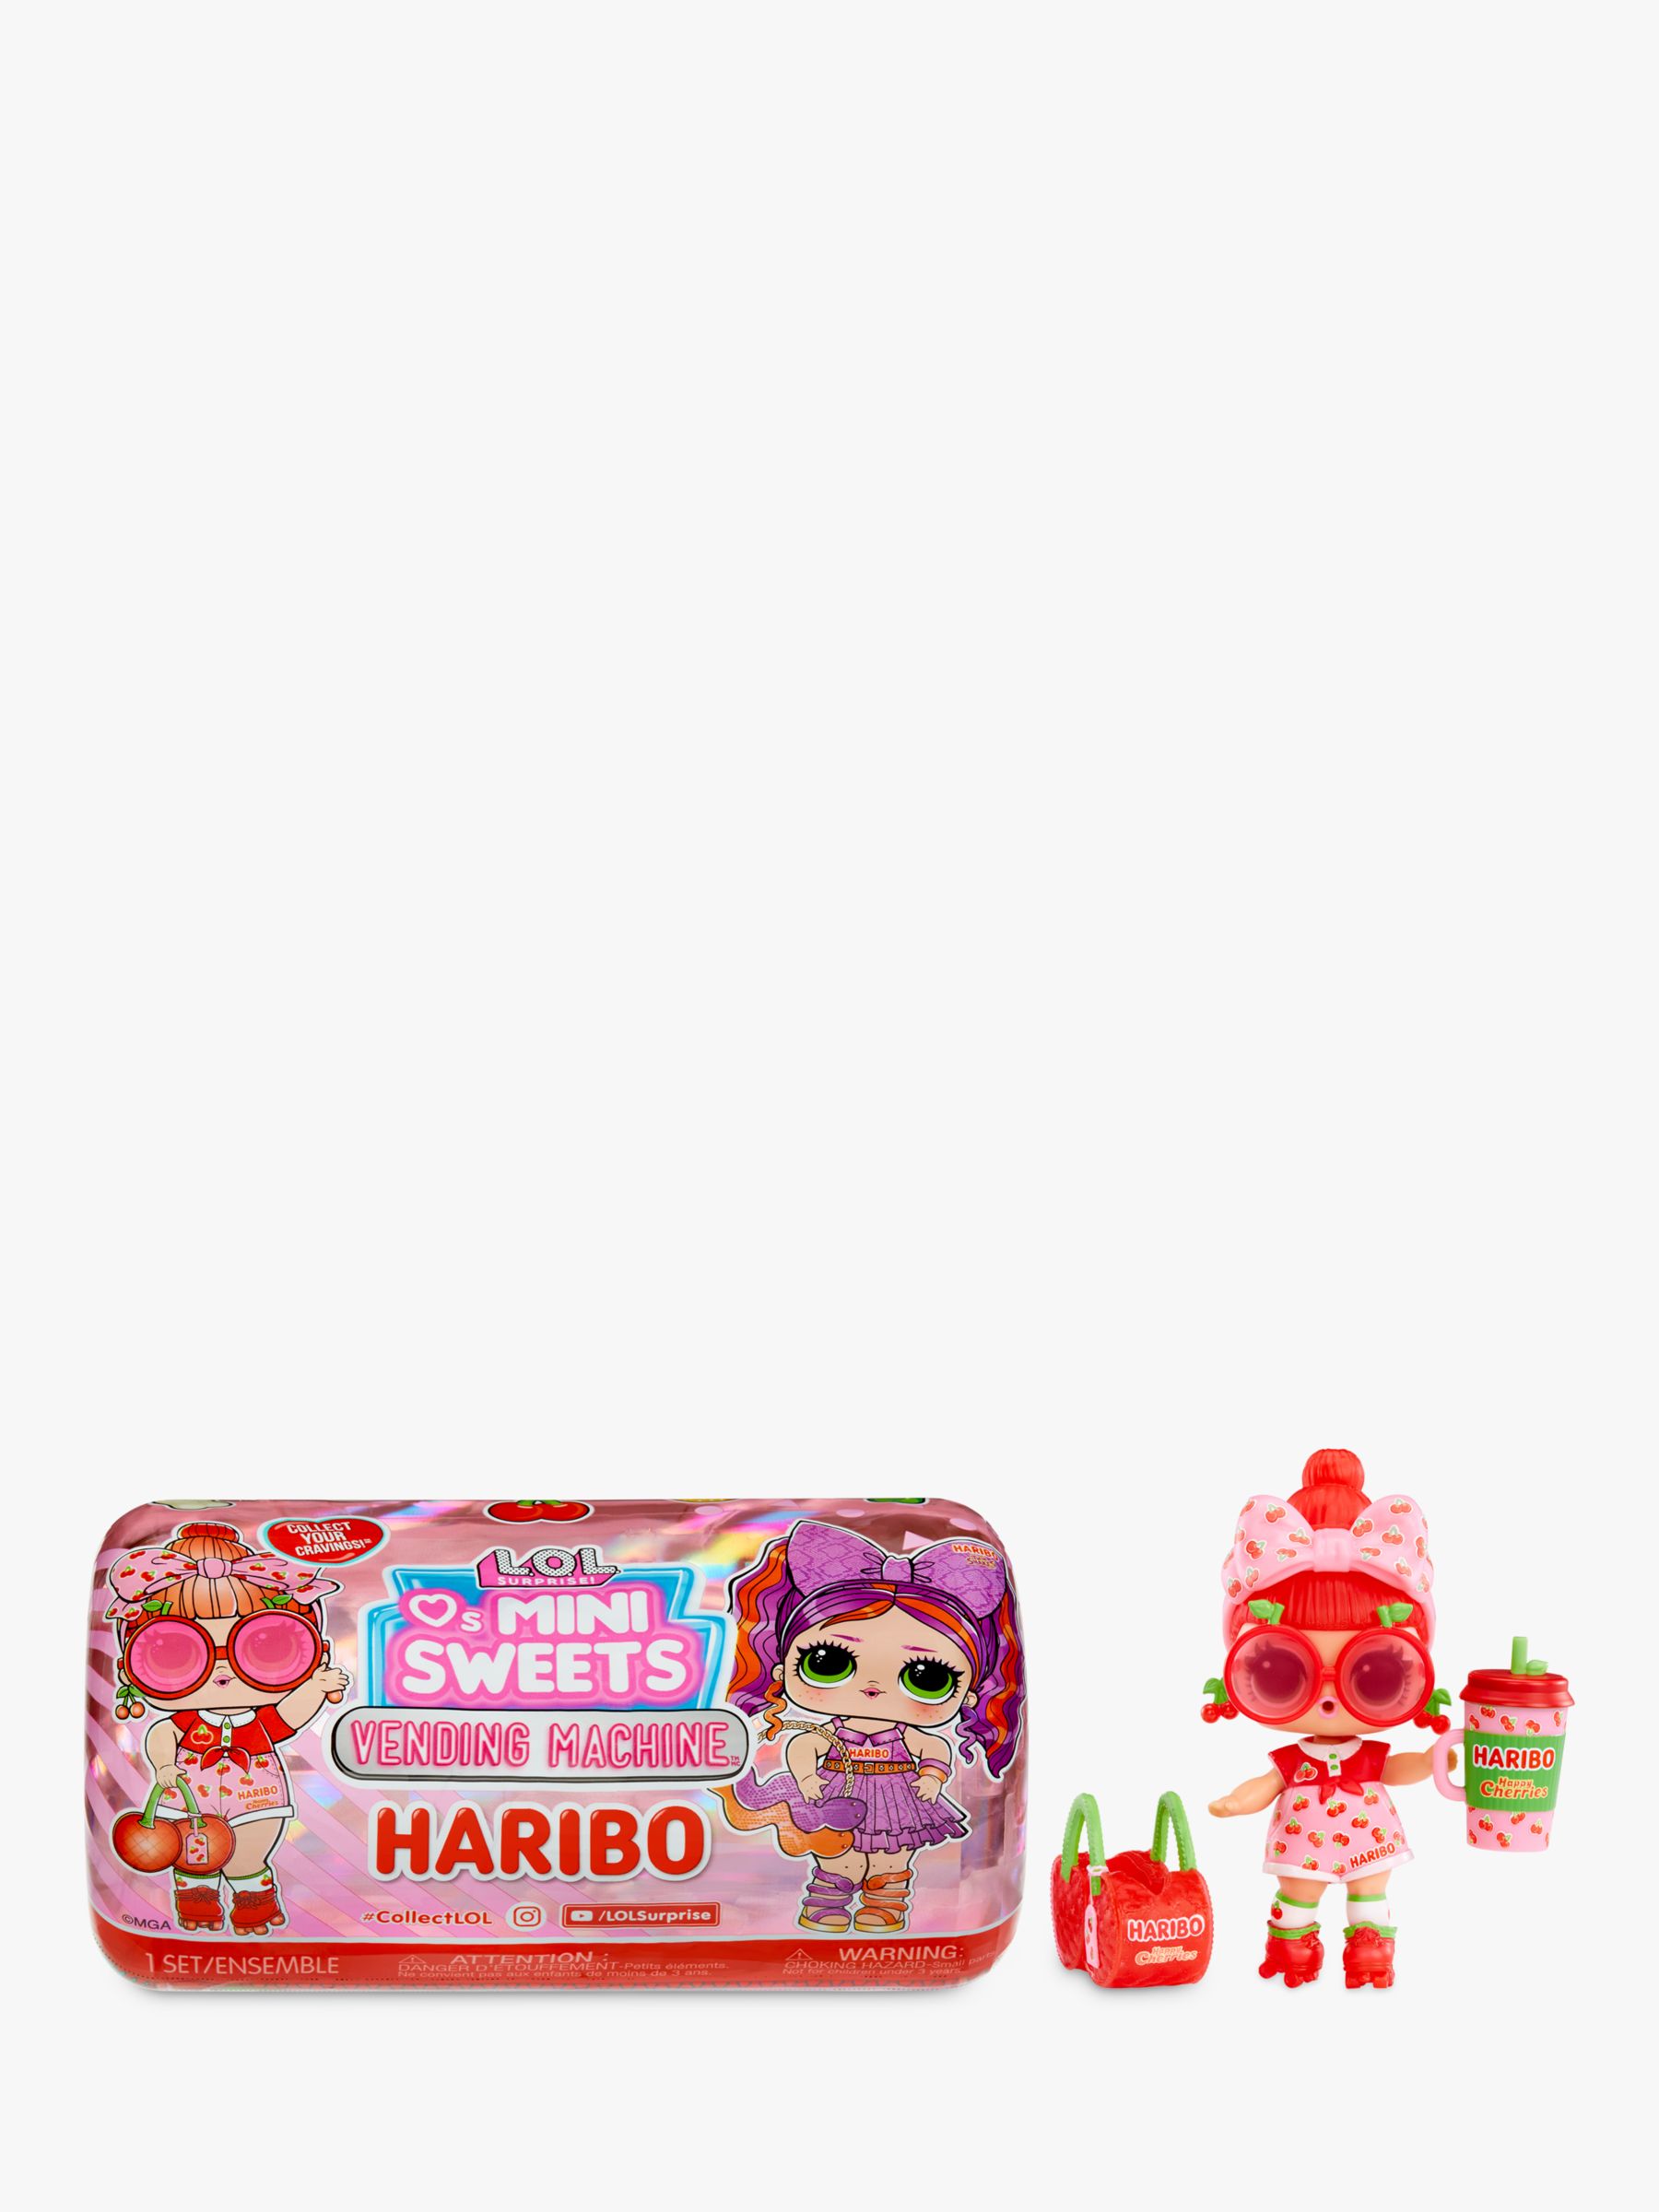 L.O.L. Surprise Loves Mini Sweets X Haribo Vending